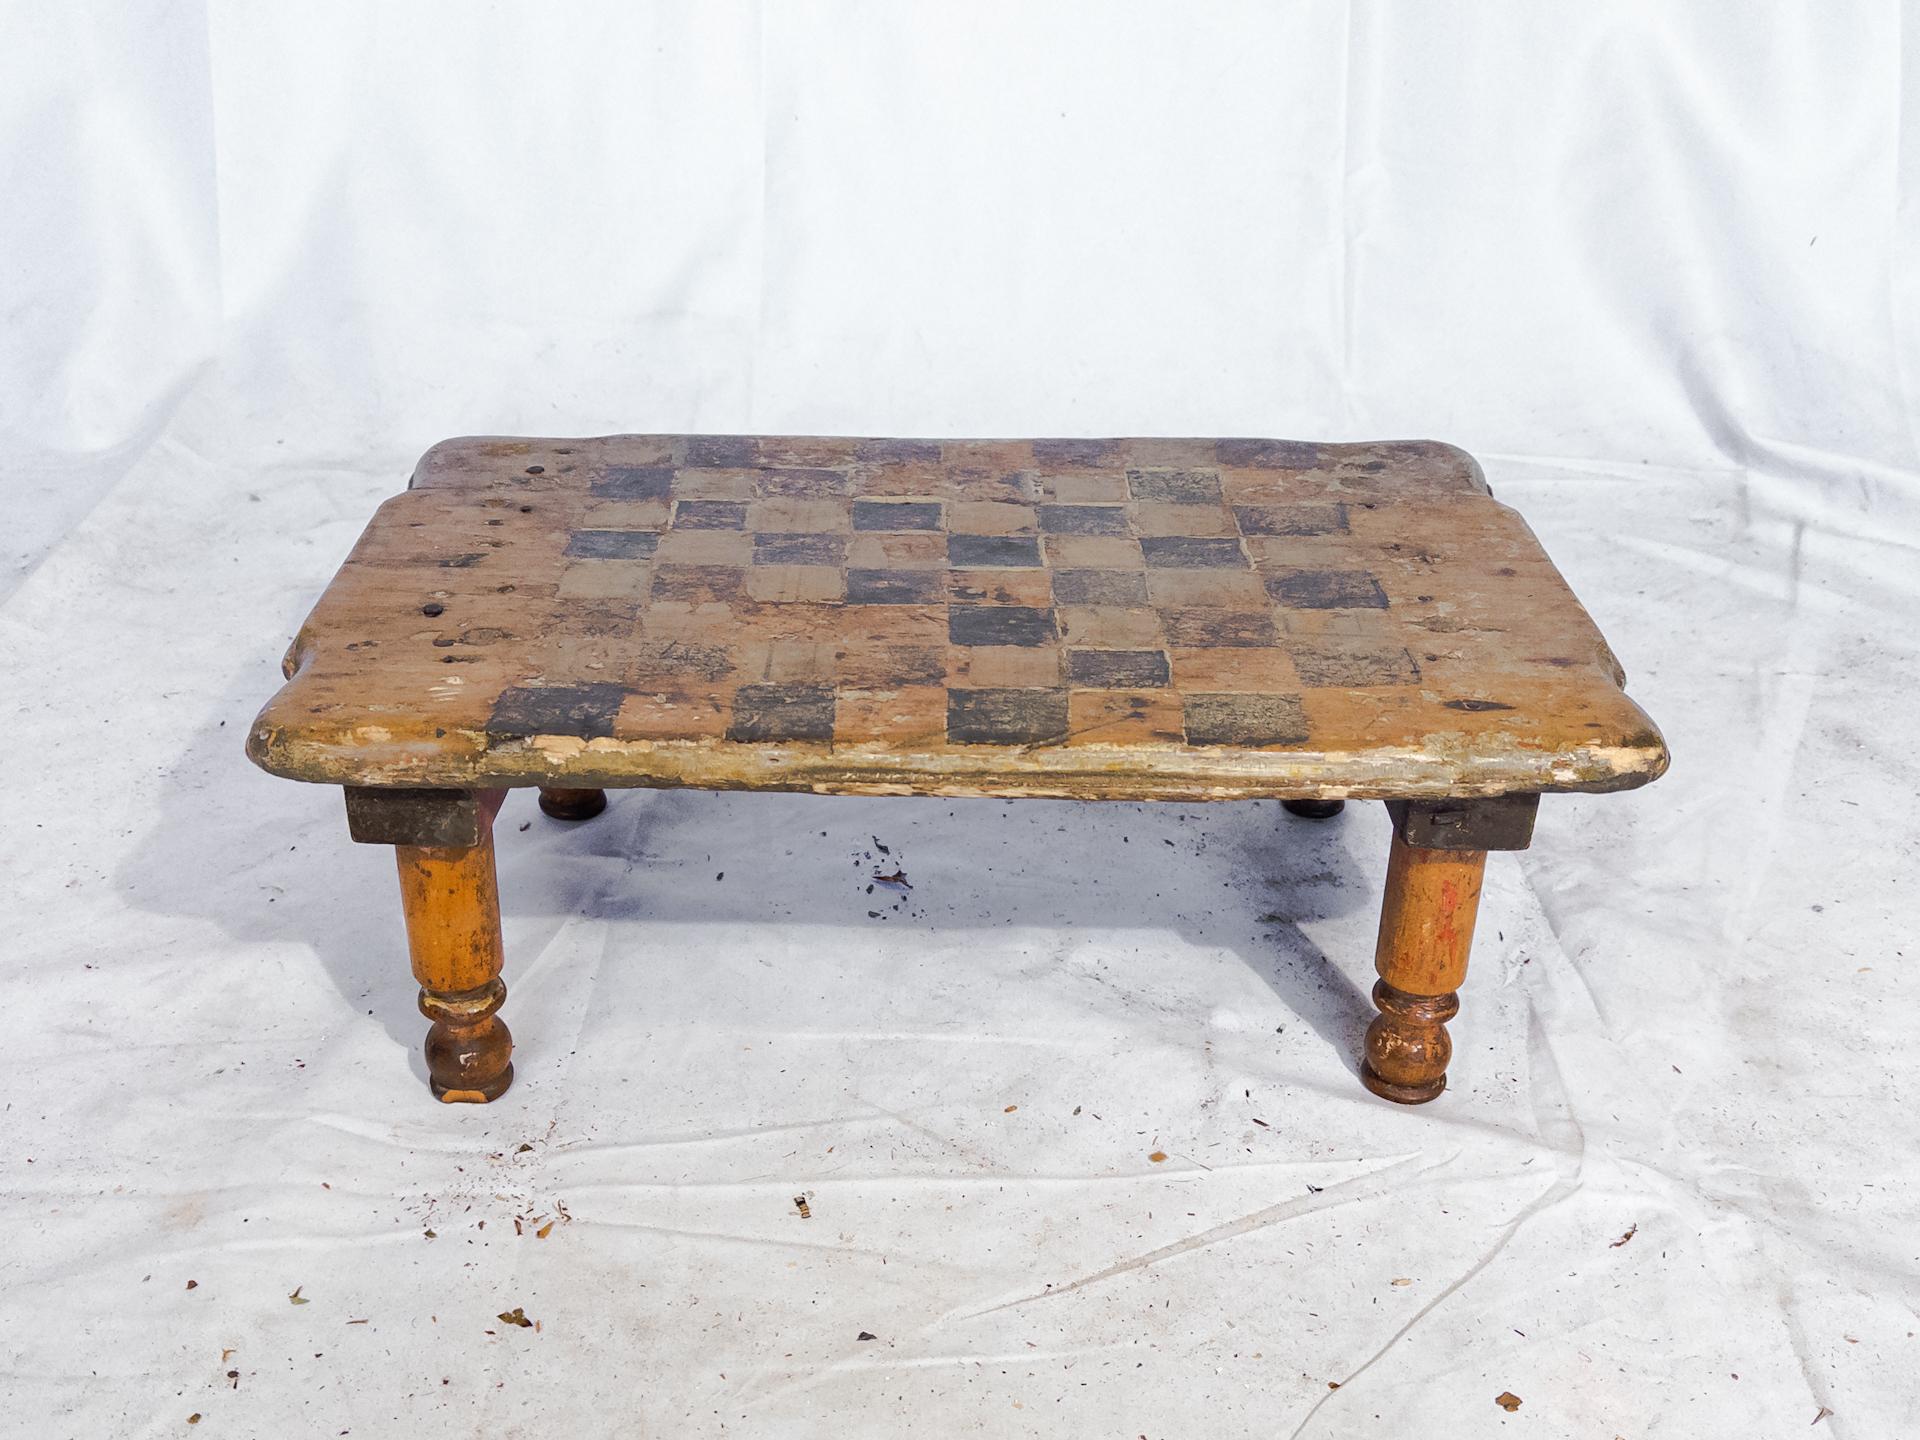 Der antike kleine Schachbretttisch ist ein charmantes Stück aus Neuengland, das sich einer reichen Geschichte und zeitloser Eleganz rühmen kann. Mit einer zierlichen Höhe von 6,5 Zoll strahlt dieser Tisch Ursprünglichkeit und Handwerkskunst aus.